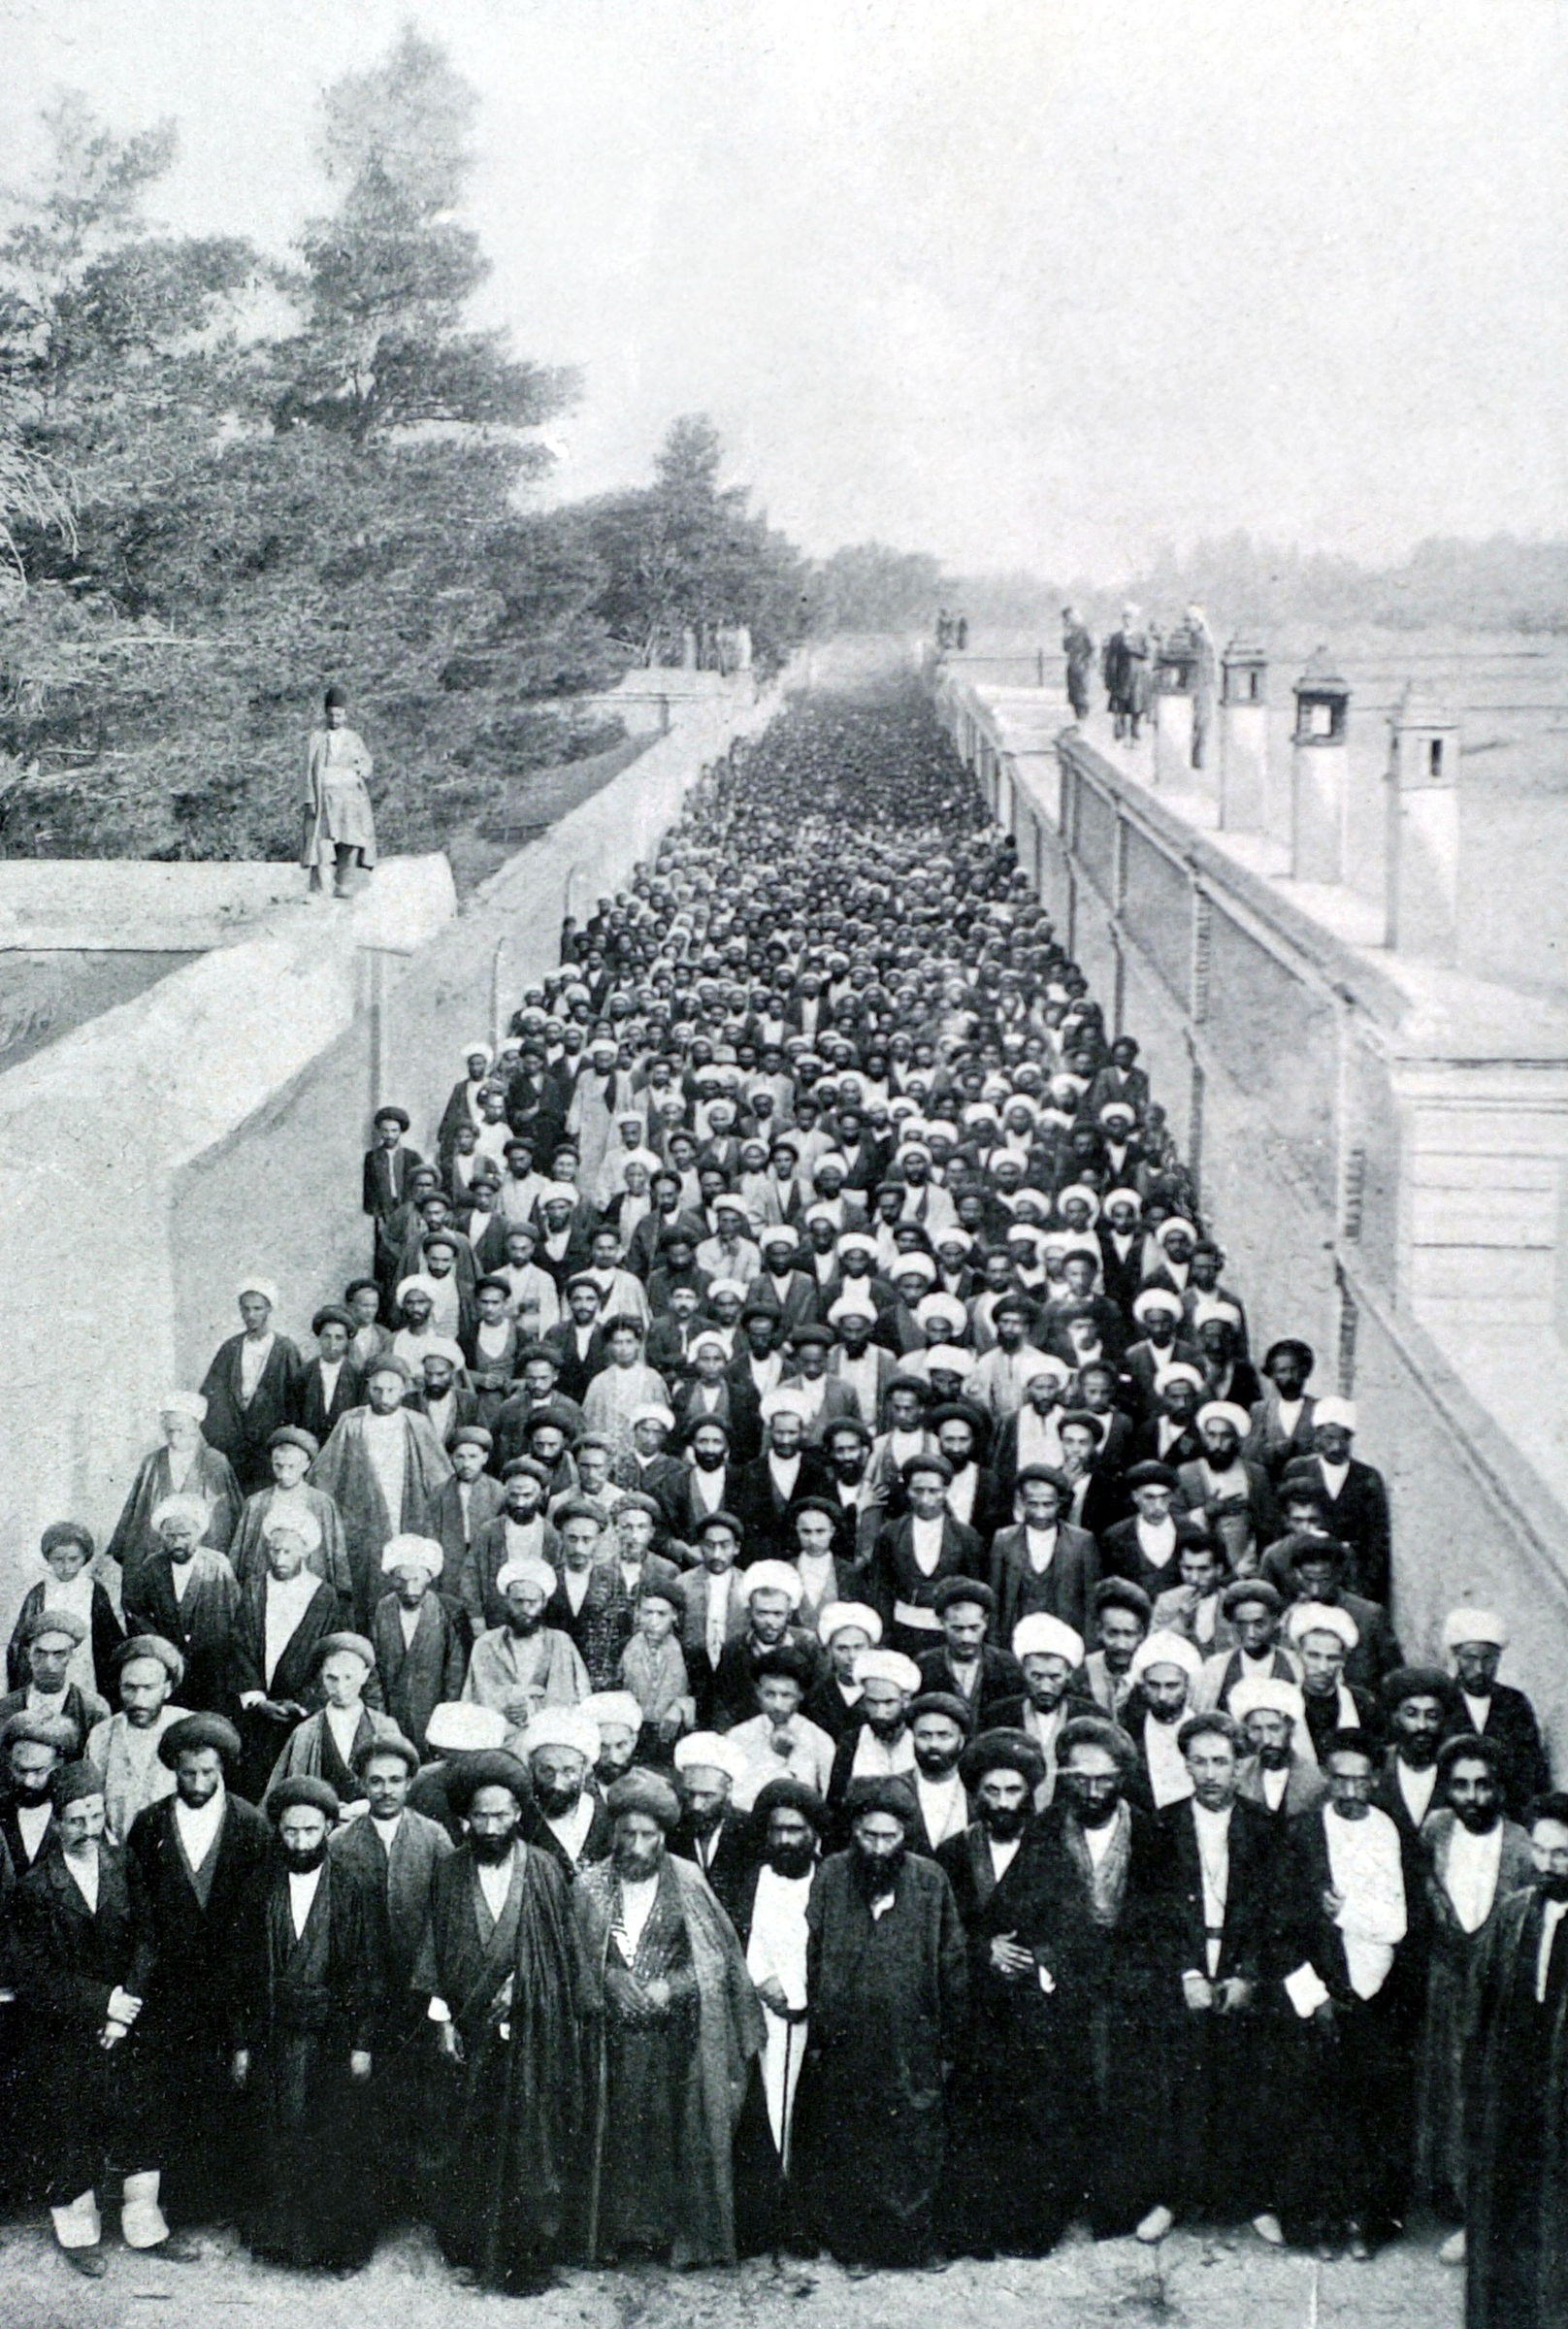 Un grupo de clérigos constitucionalistas se reúne frente a la embajada británica en Teherán, 1906. (Foto12/UIG/Getty Images)